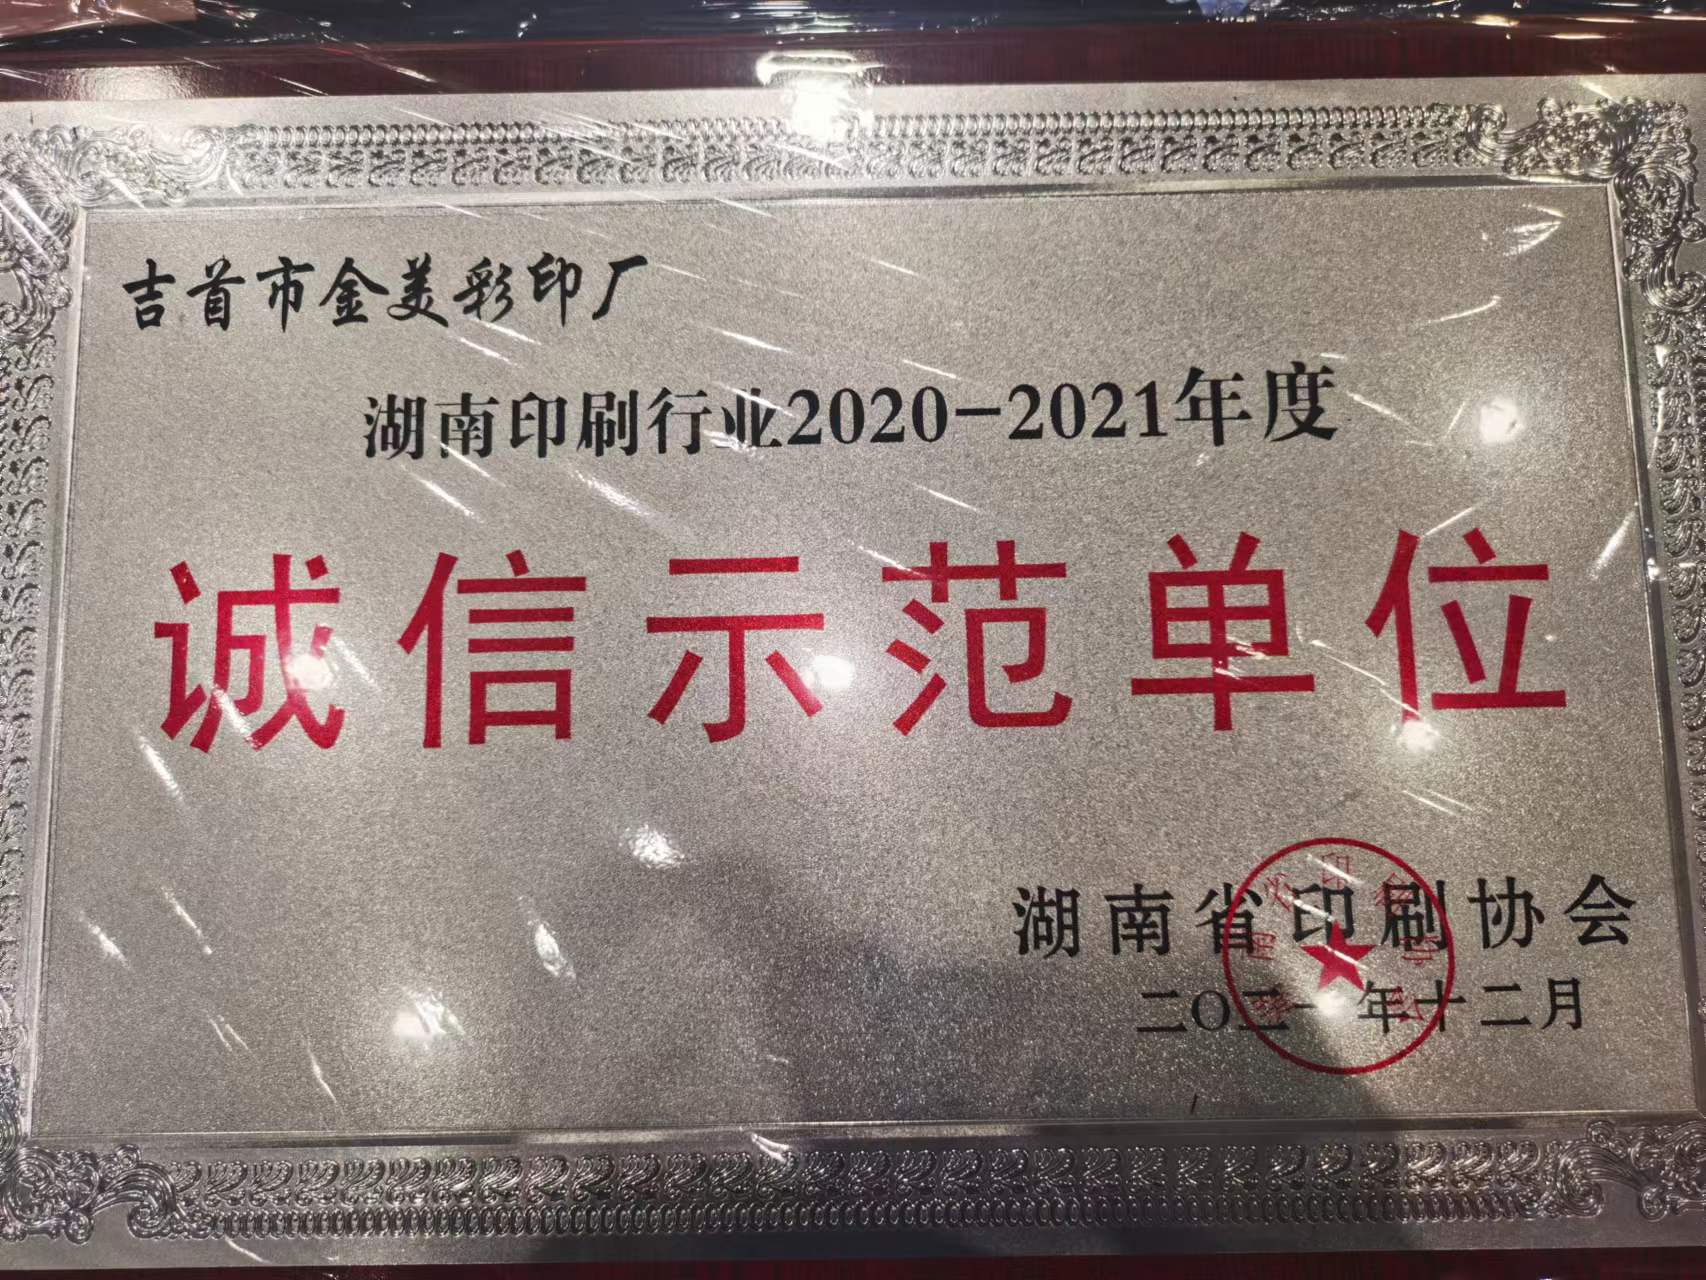 金美彩印被授予“2020—2021年度湖南省印刷行业诚信示范单位”(图3)